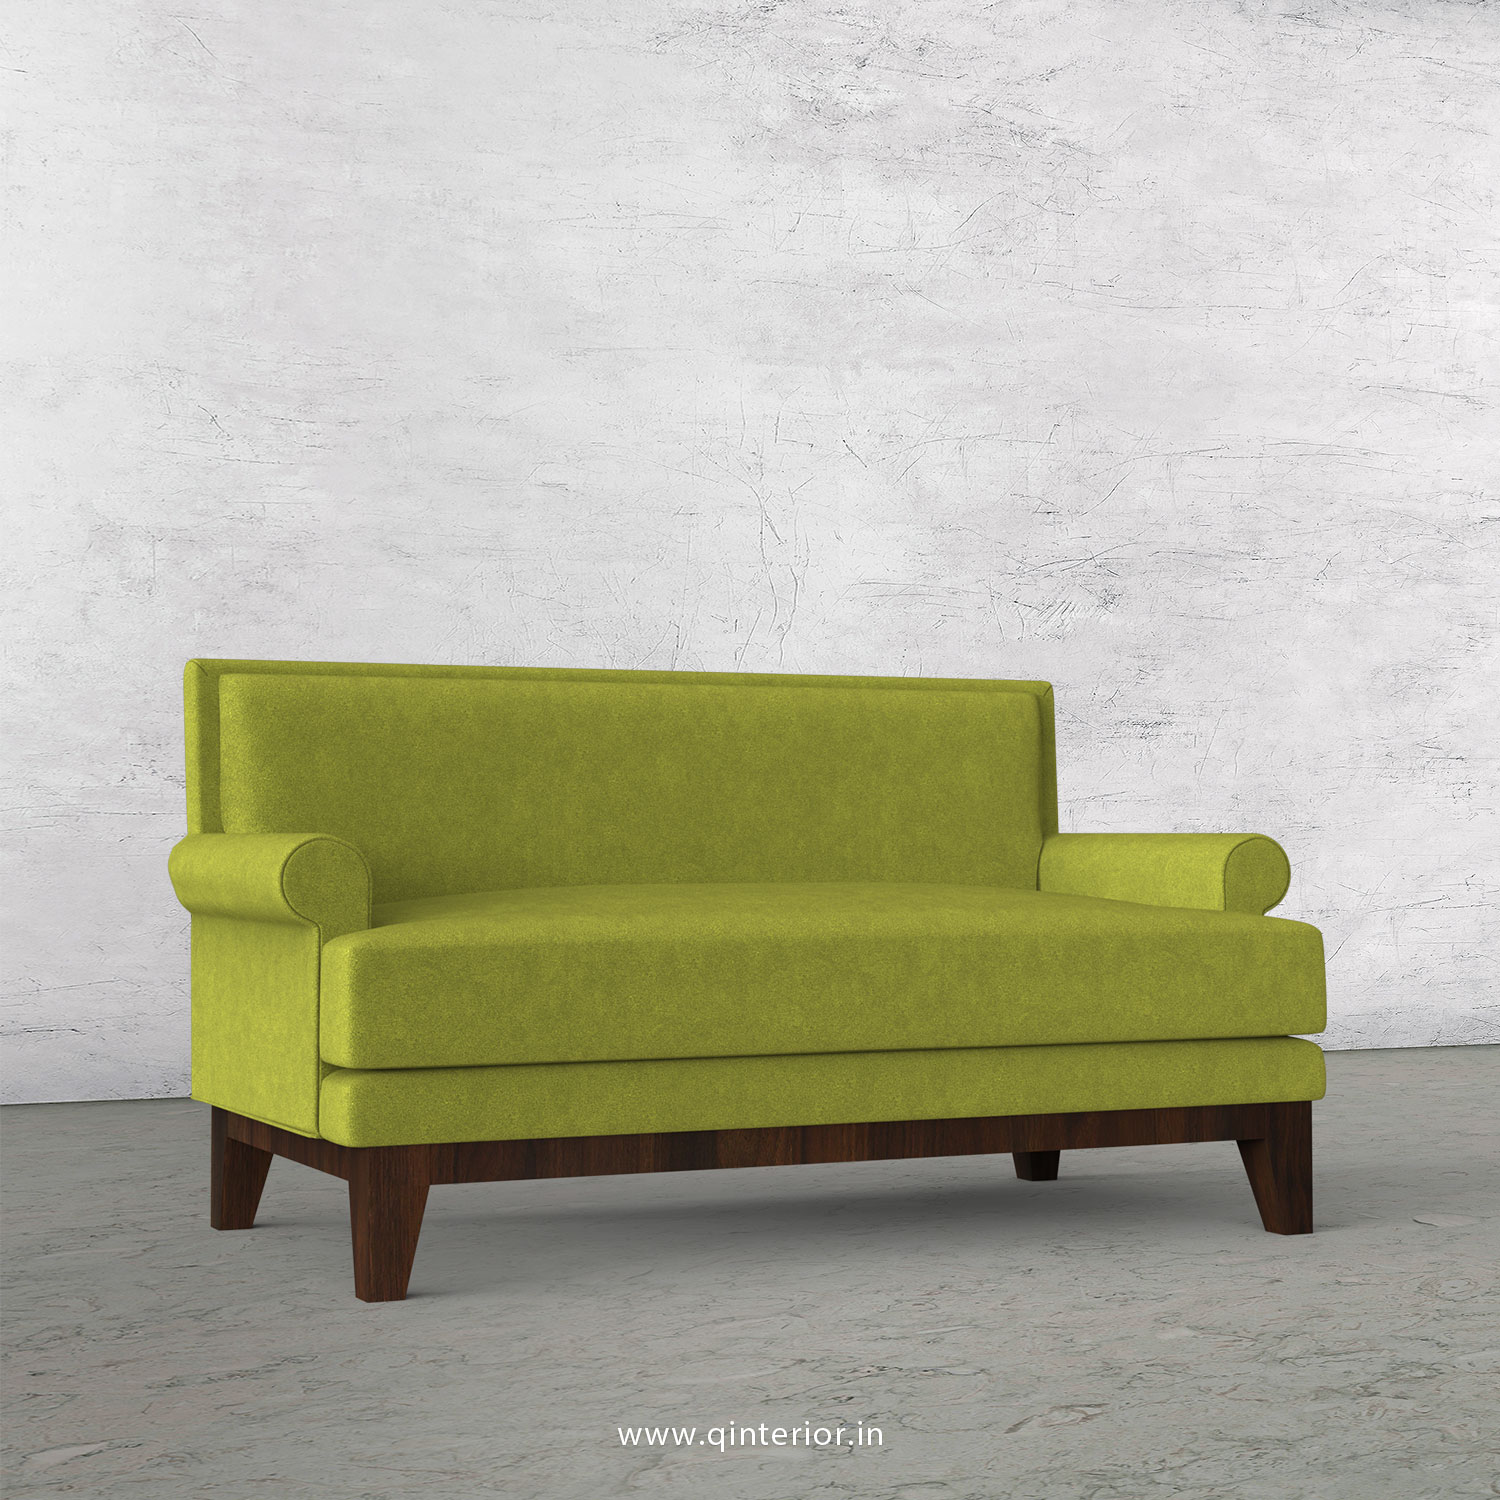 Aviana 2 Seater Sofa in Velvet Fabric - SFA001 VL10